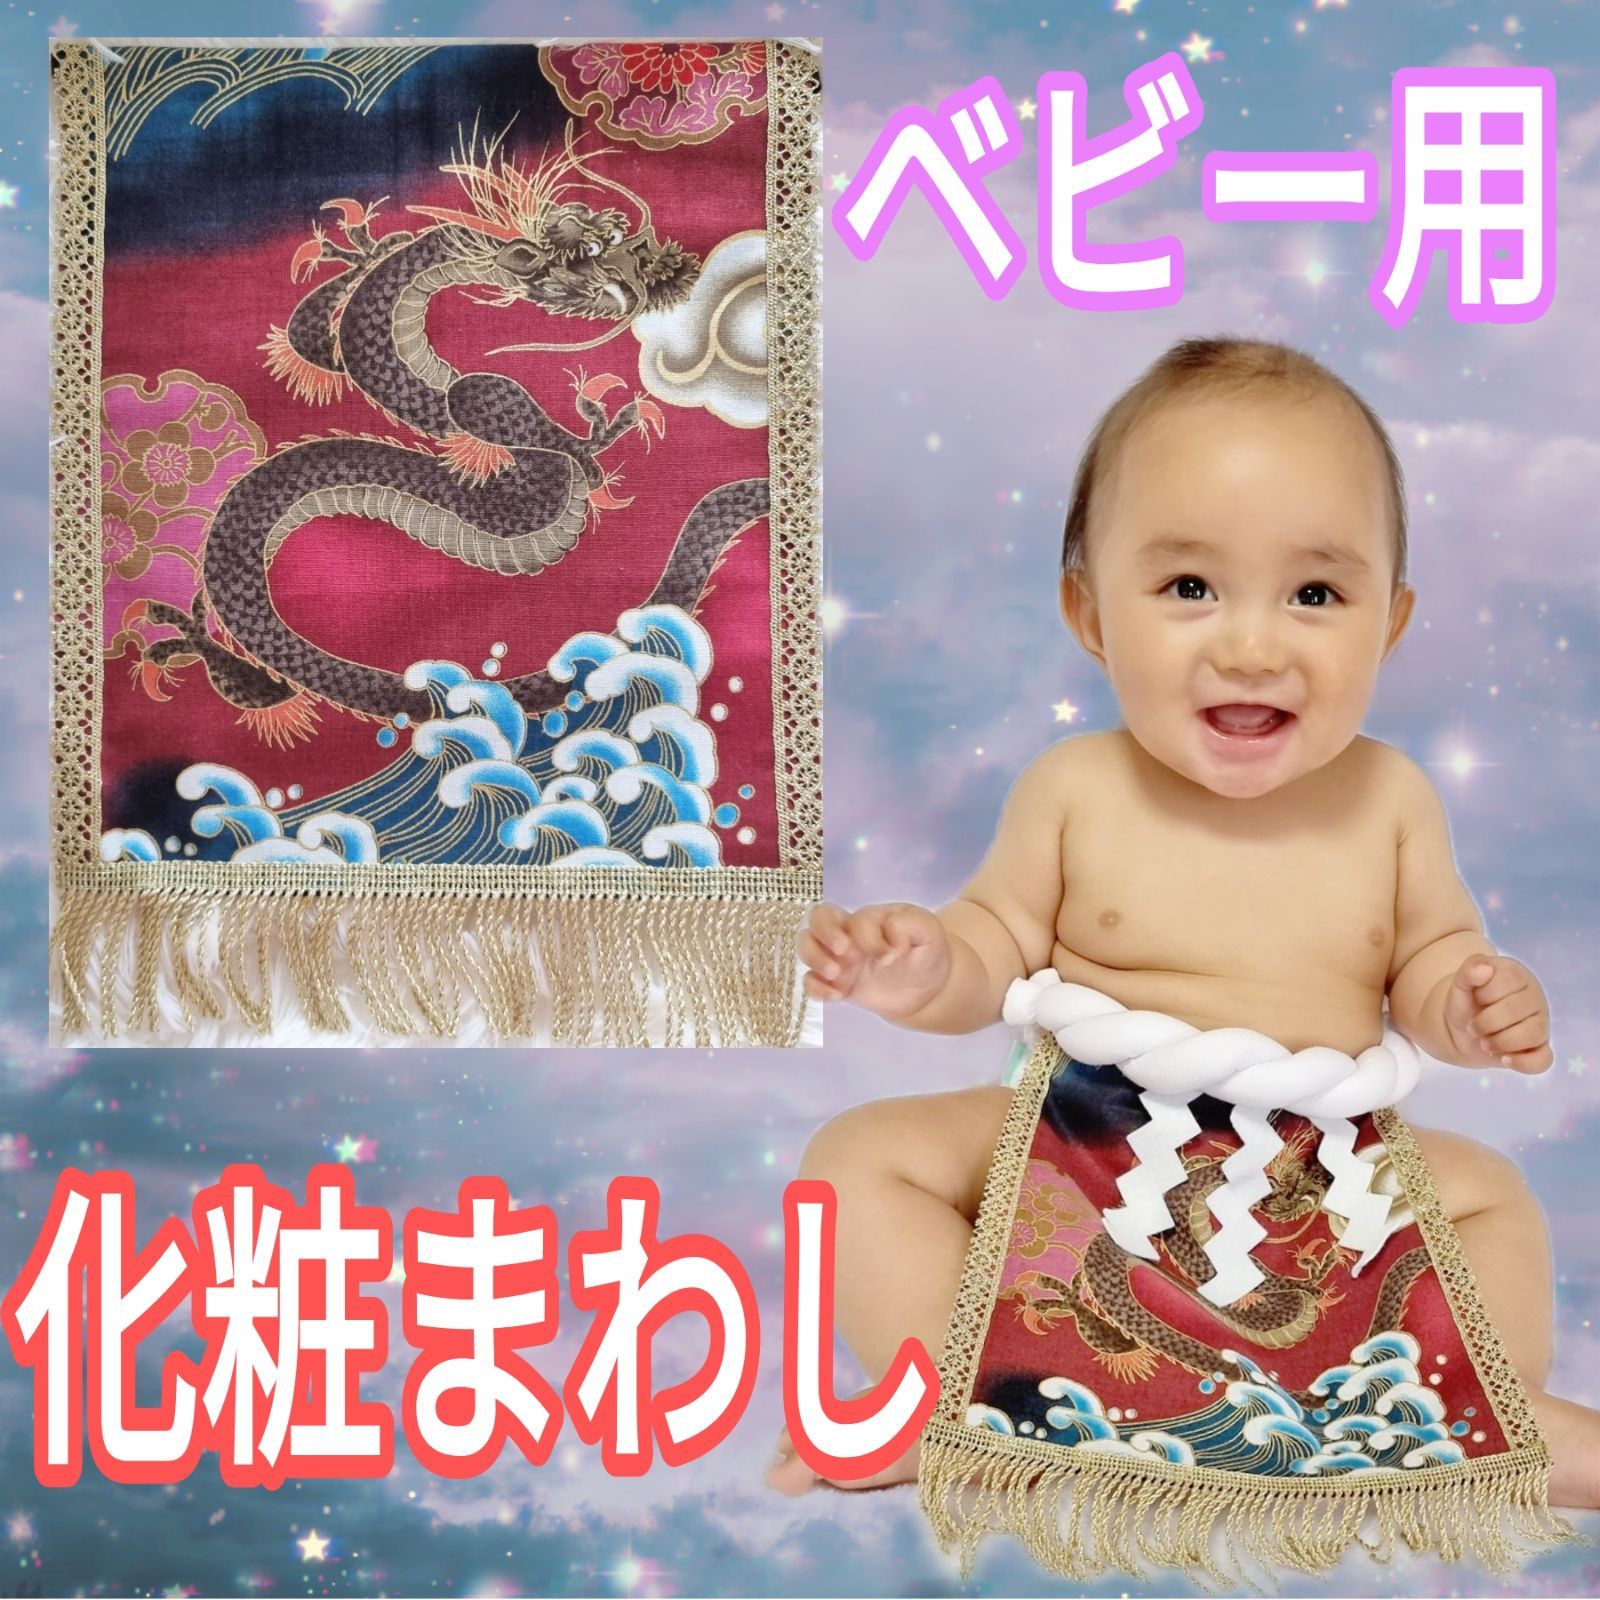 赤ちゃん 化粧まわし 幼児 - 千葉県の家電